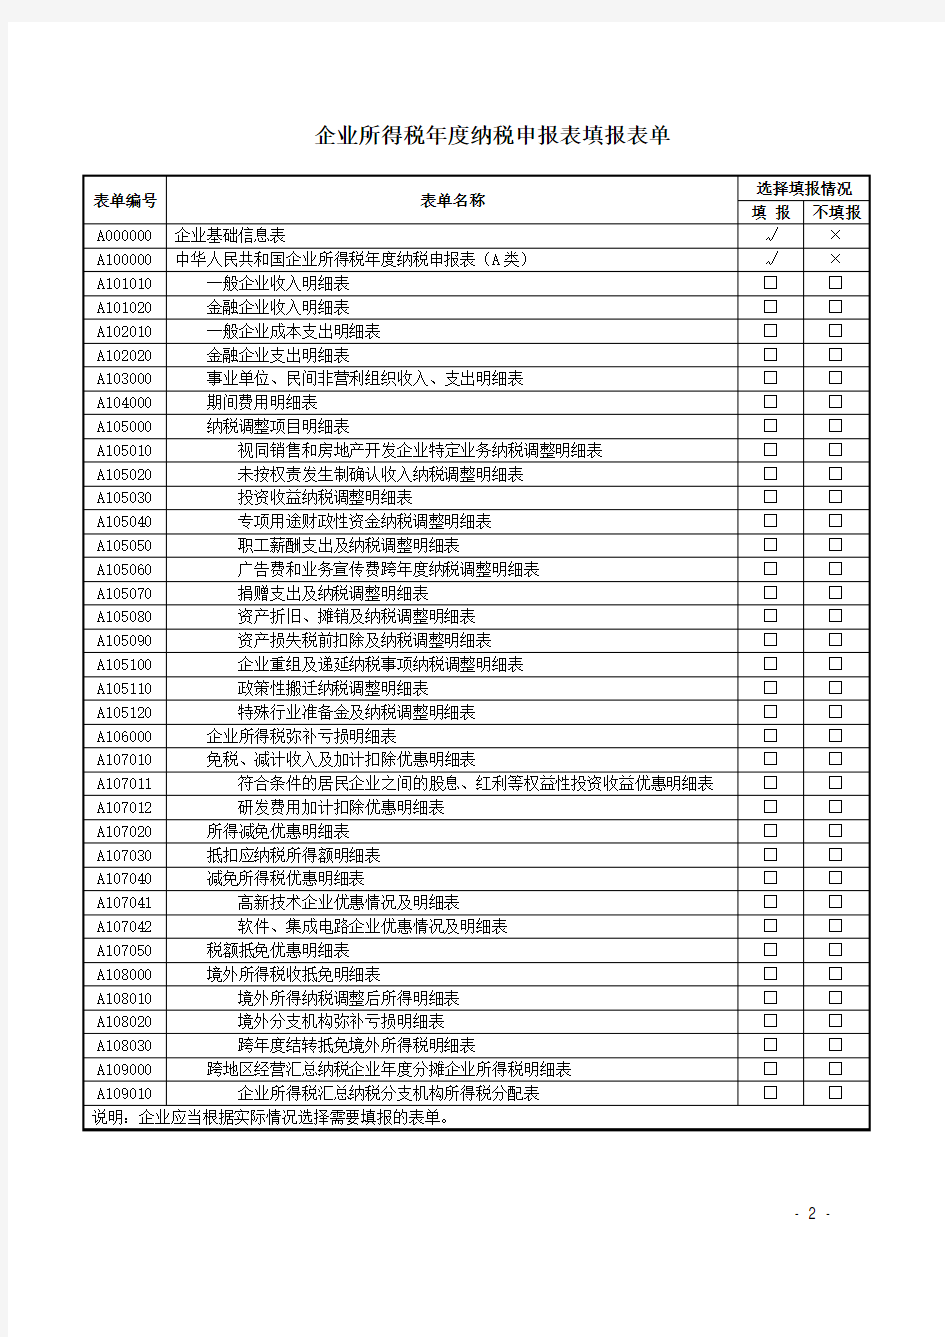 1中华人民共和国企业所得税年度纳税申报表(零申报)